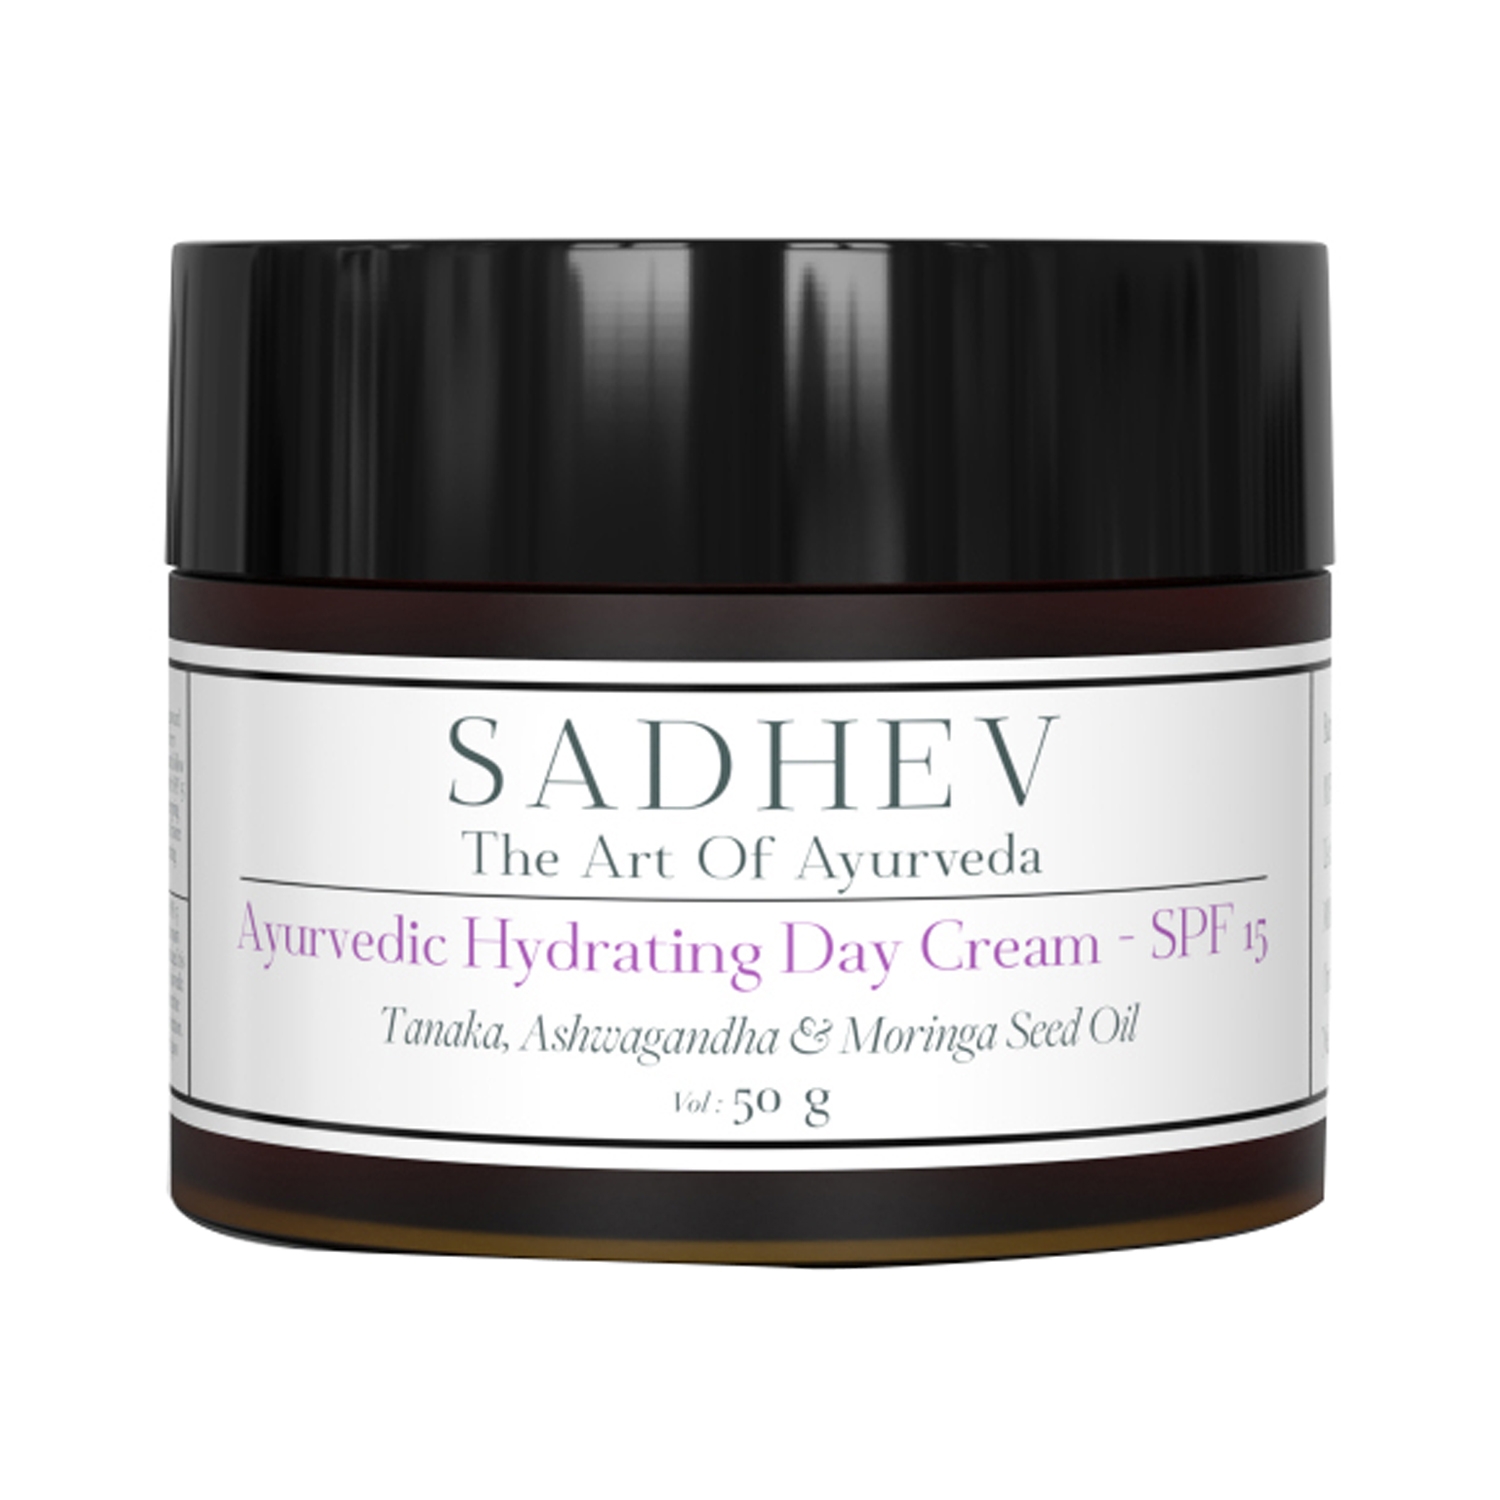 Sadhev Ayurvedic Hydrating Day Cream SPF 15 (50g)